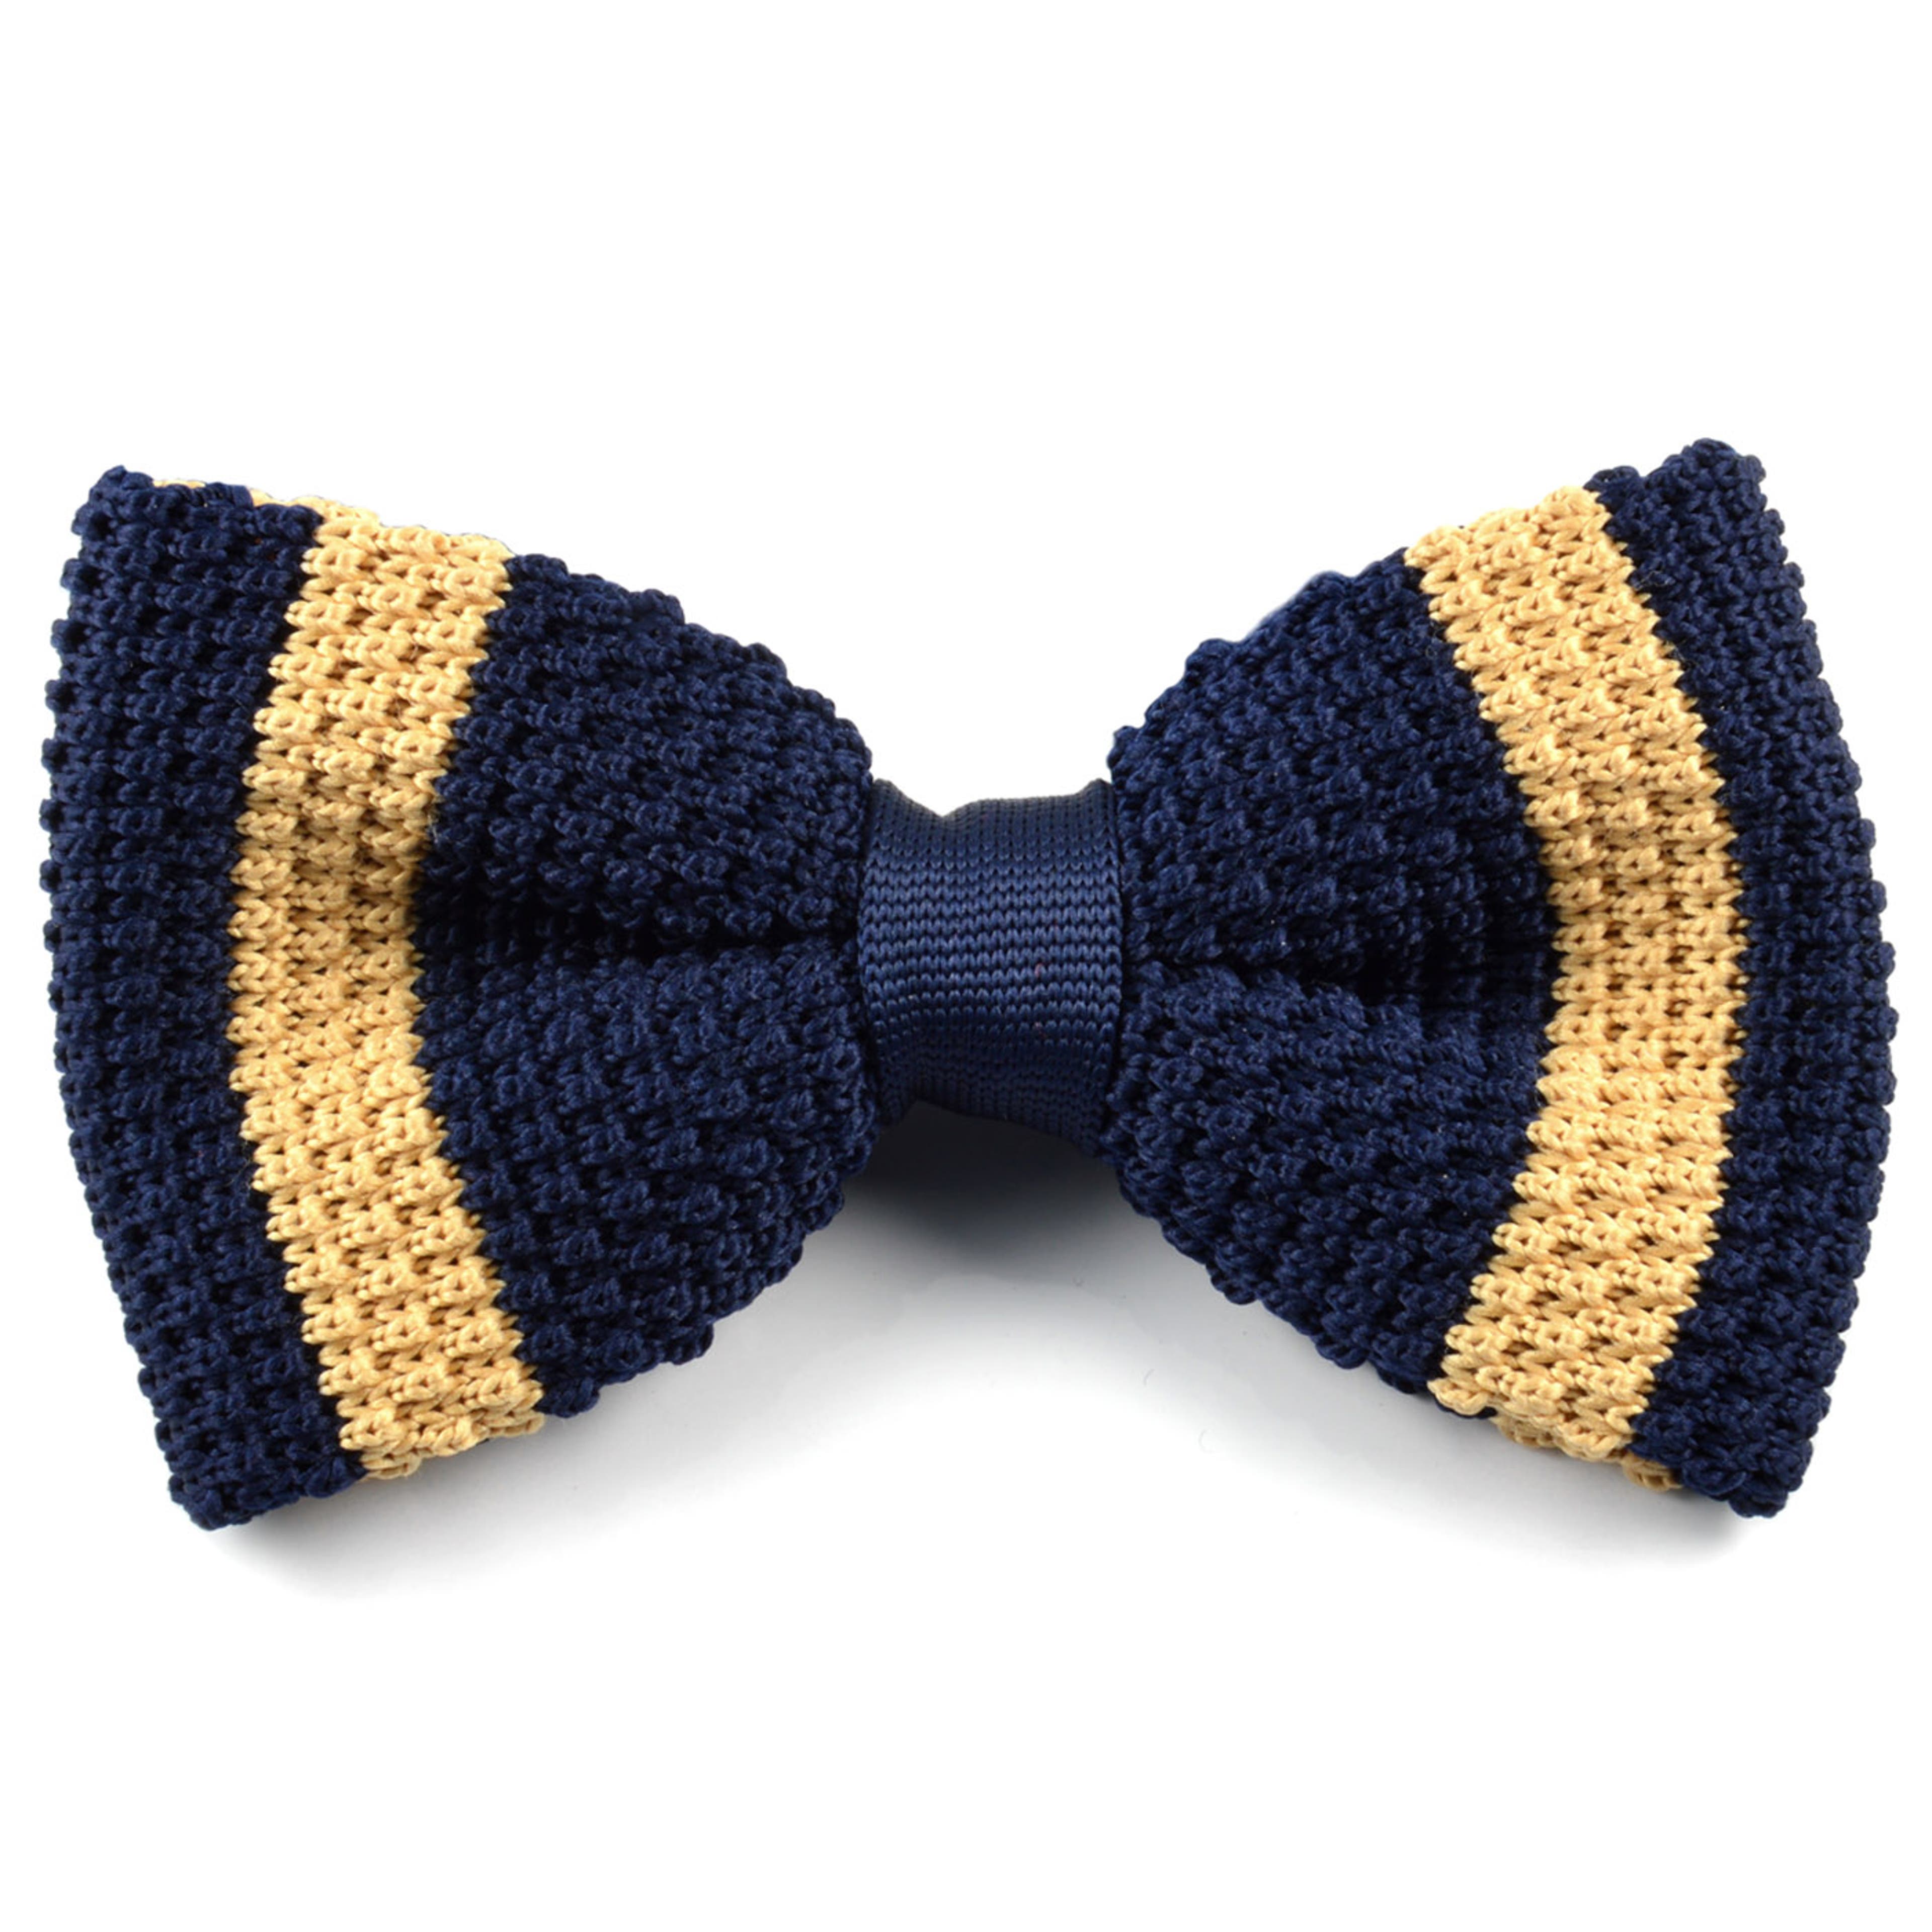 Navy Blue & Sand Striped Pre-Tied Bow Tie